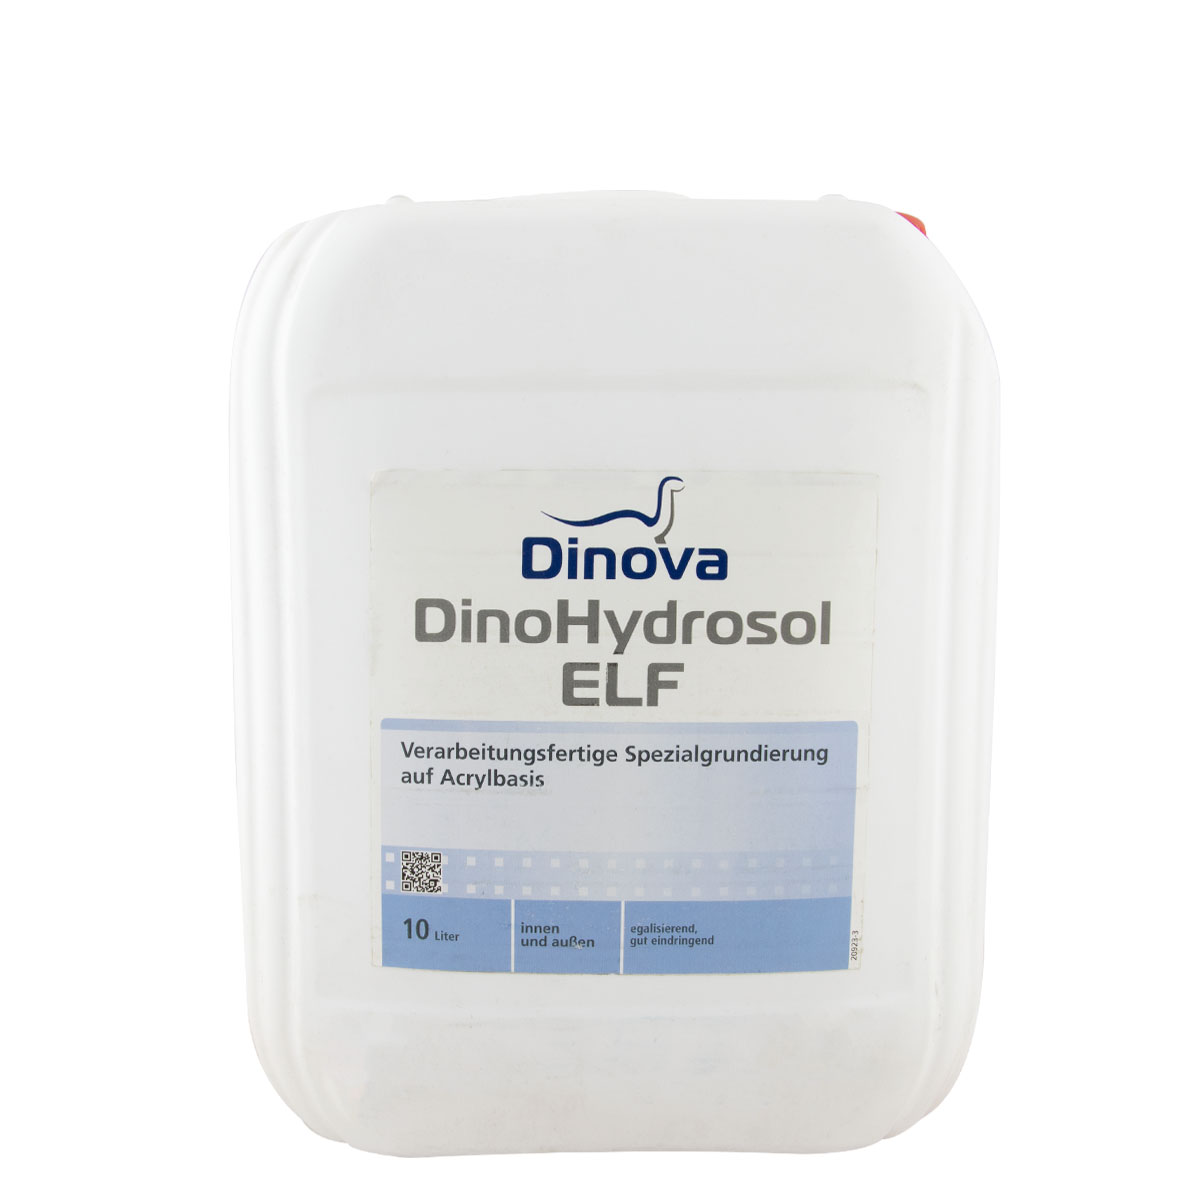 Dinova DinoHydrosol 10L, Tiefgrund, Tiefengrund, Acrylbasis